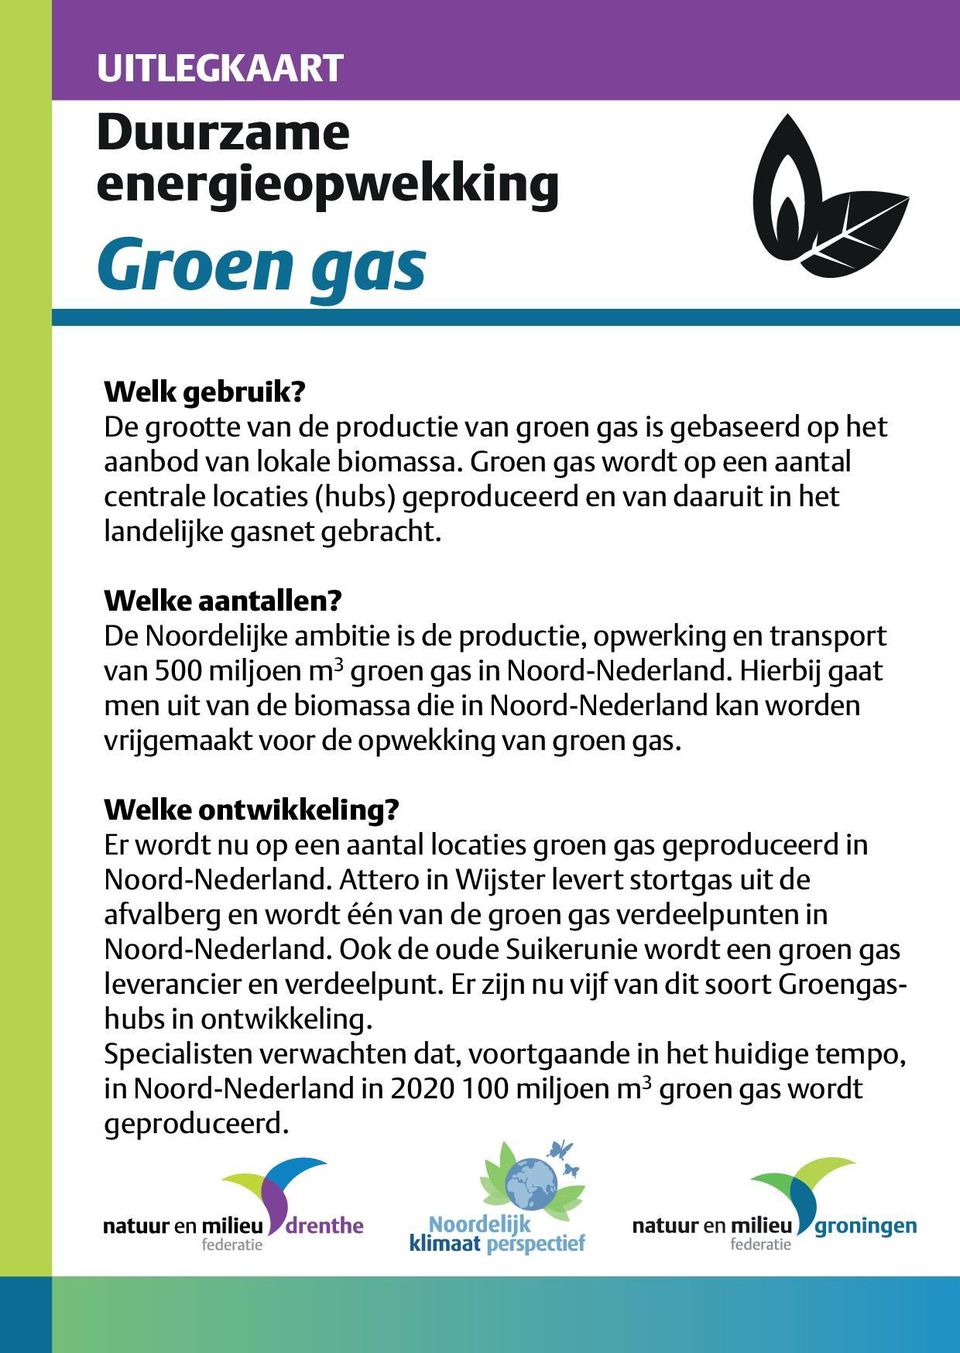 De Noordelijke ambitie is de productie, opwerking en transport van 500 miljoen m 3 groen gas in Noord-Nederland.